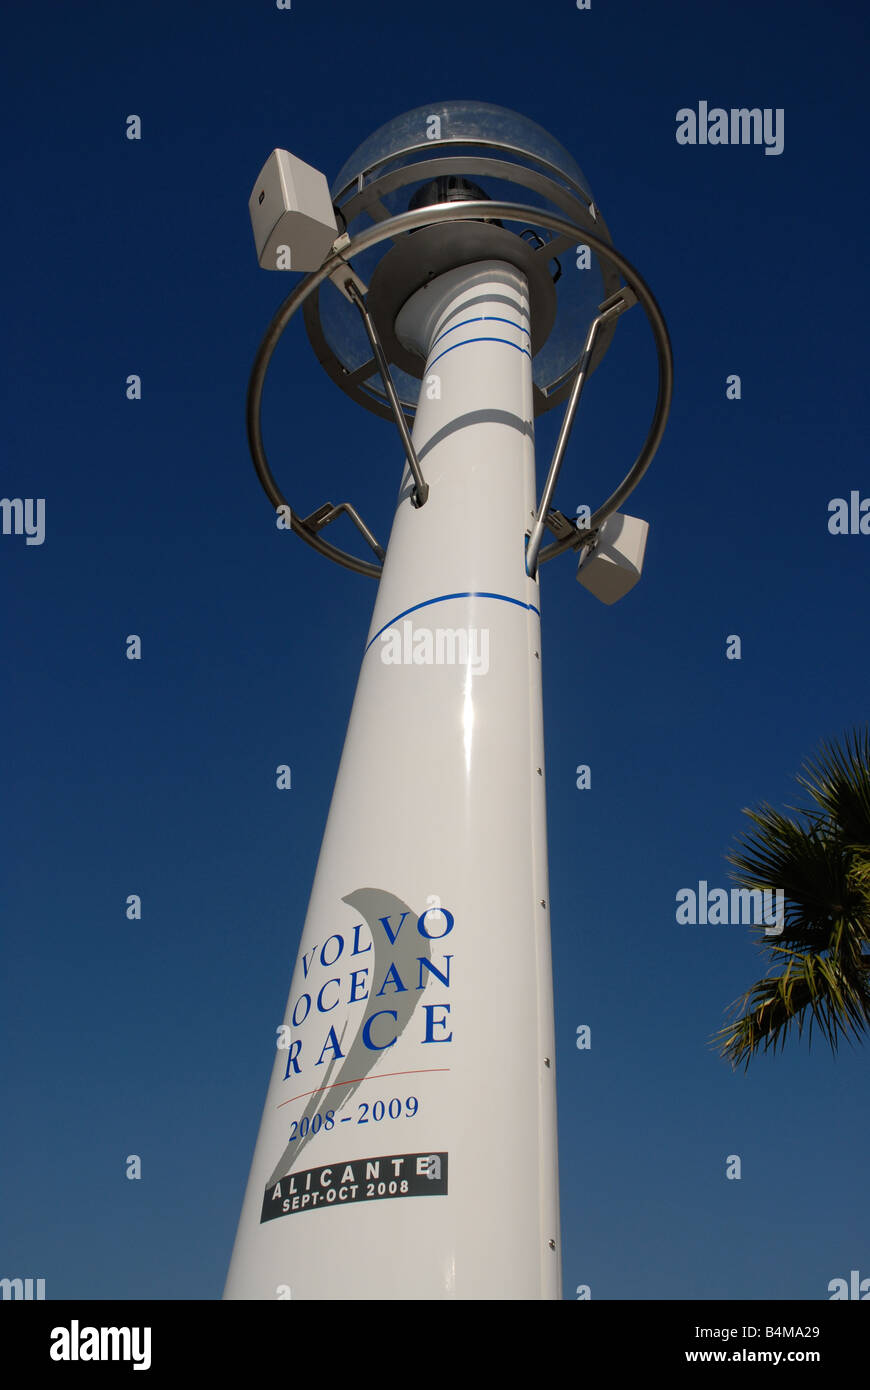 Lampost in Marina Alicante con Volvo Ocean Race dettagli, Alicante, Alicante provincia, Comunidad Valenciana, Spagna Foto Stock